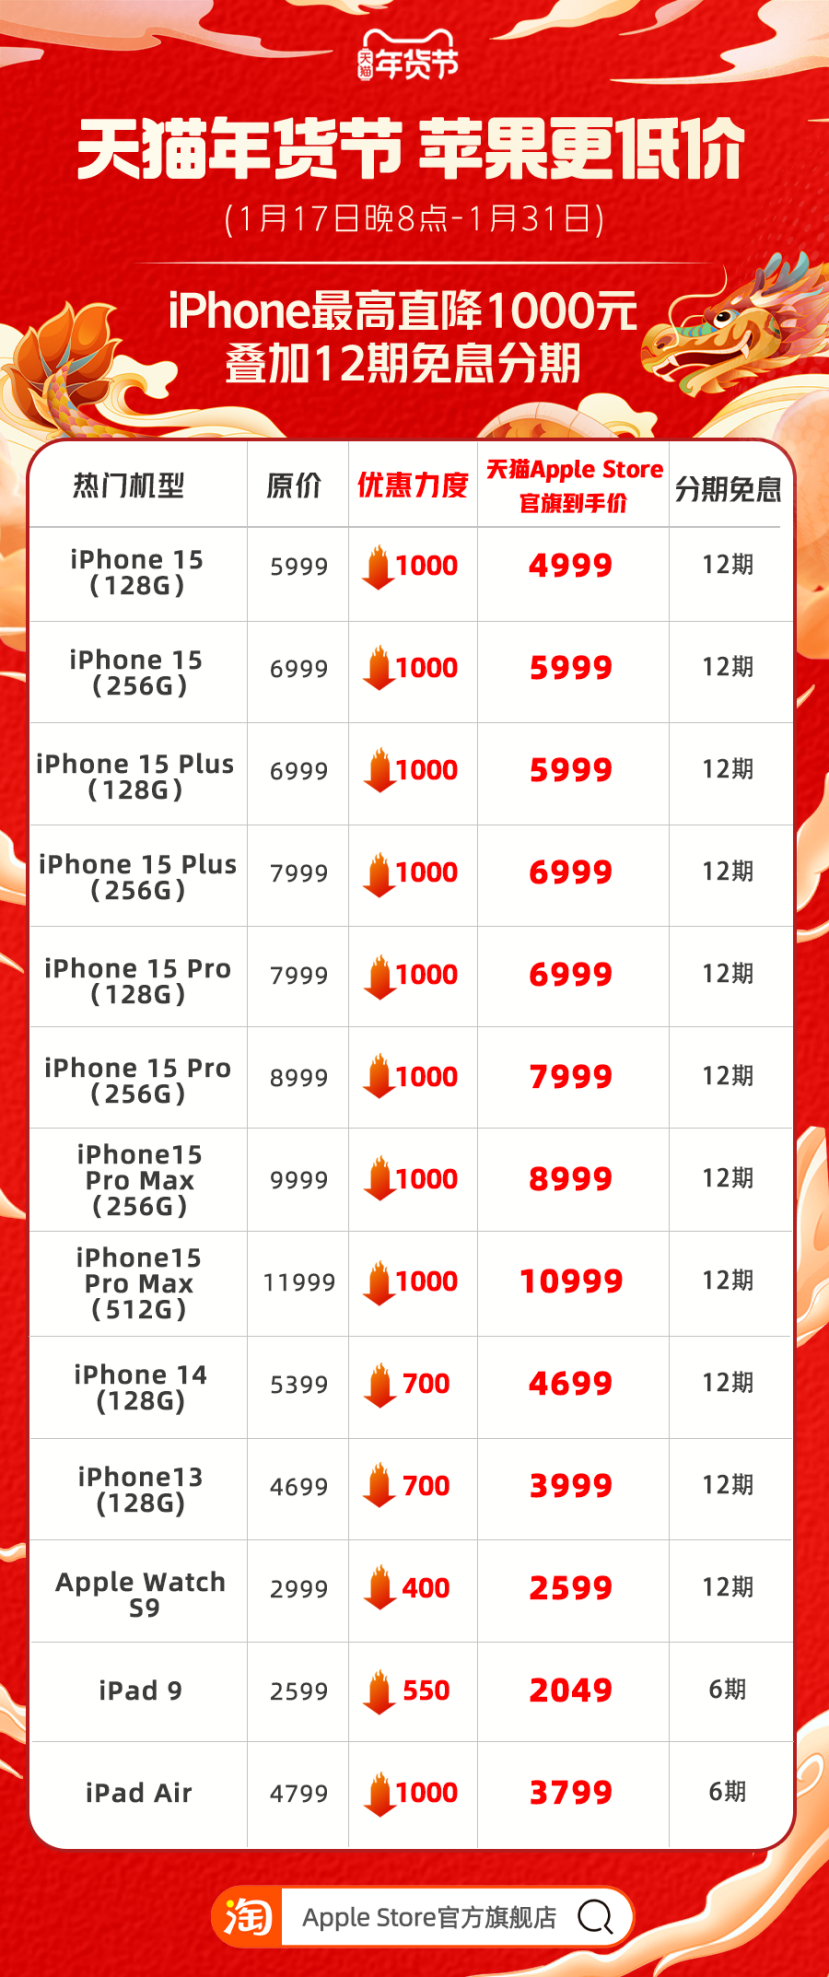 必博Bibo苹果官方旗舰店参加天猫年货节 iPhone15 全系直降 1000(图1)